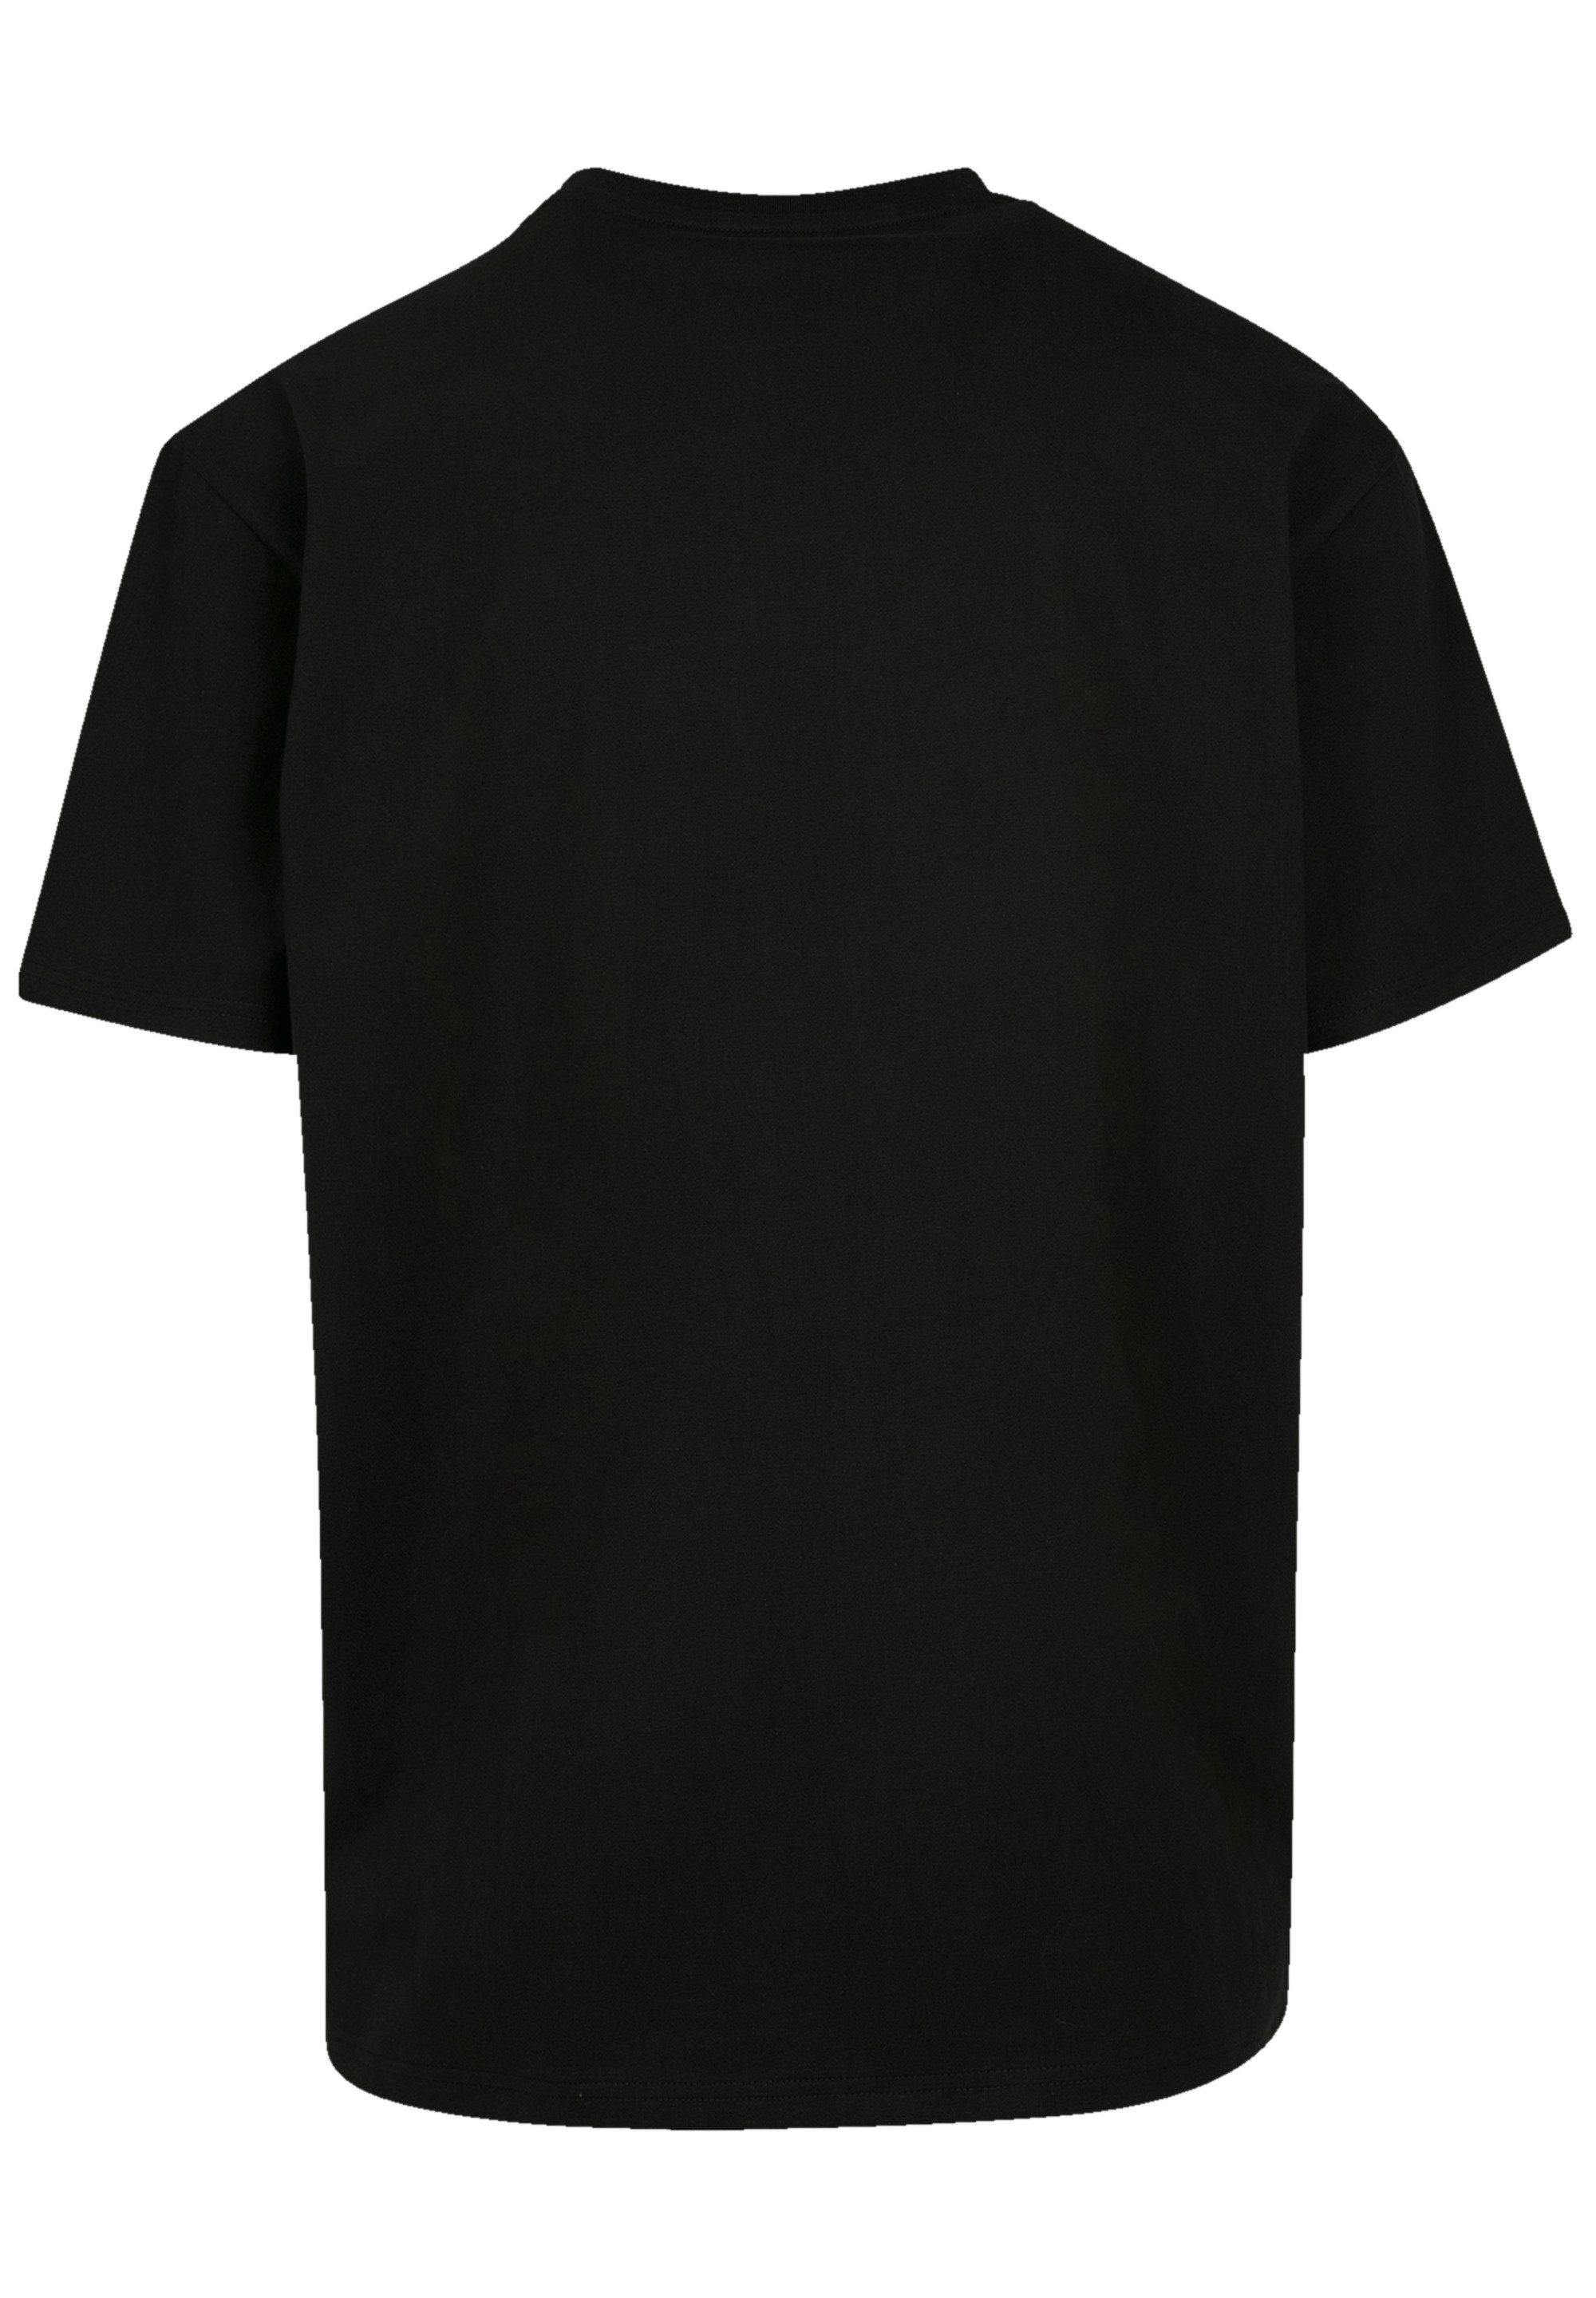 F4NT4STIC T-Shirt Rush Rock Night By Band schwarz Circle Qualität Premium Fly